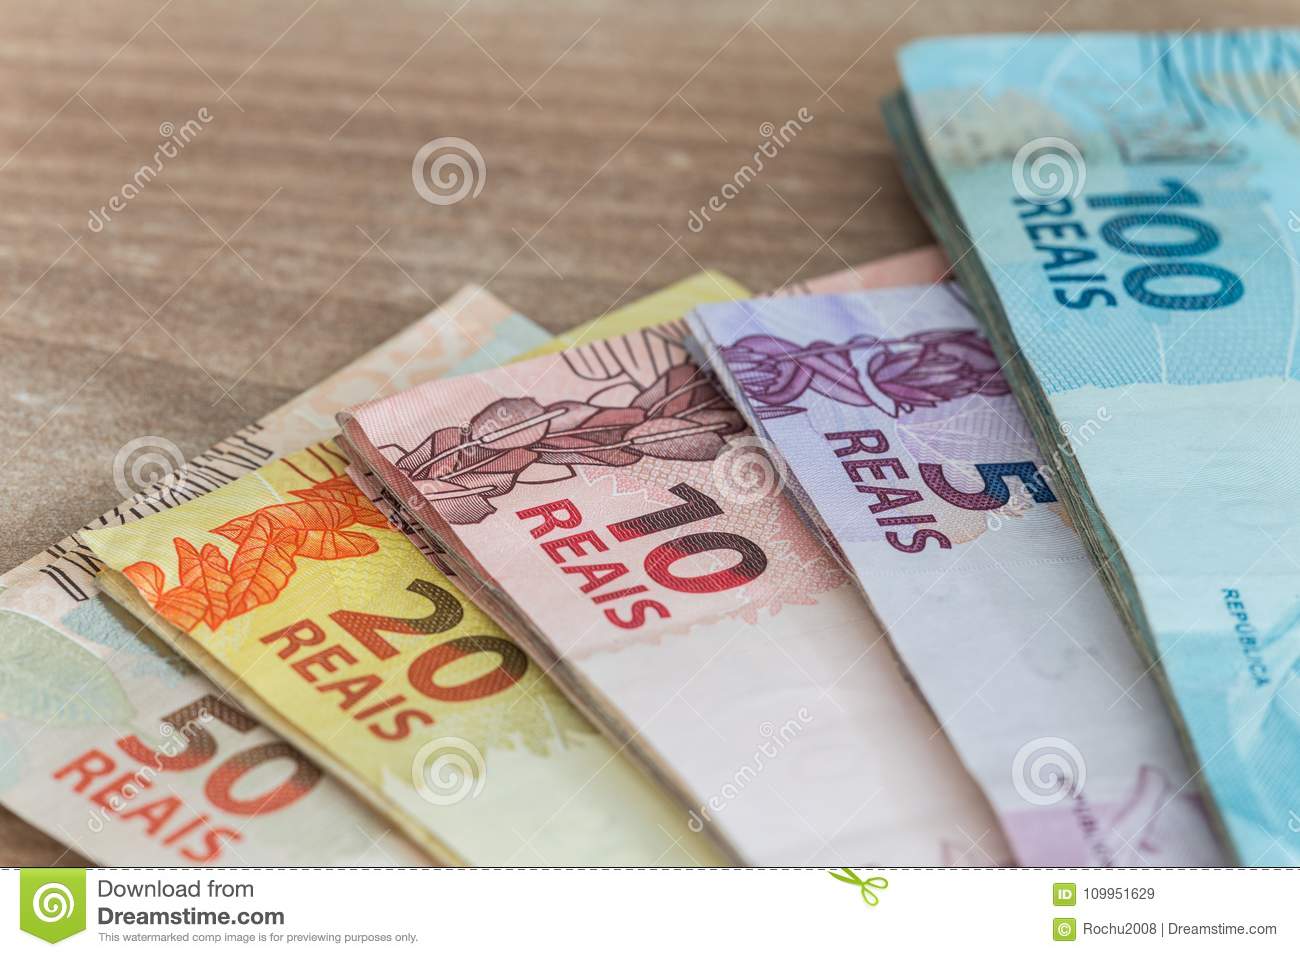 Dinheiro brasileiro e moedas comemorativas 